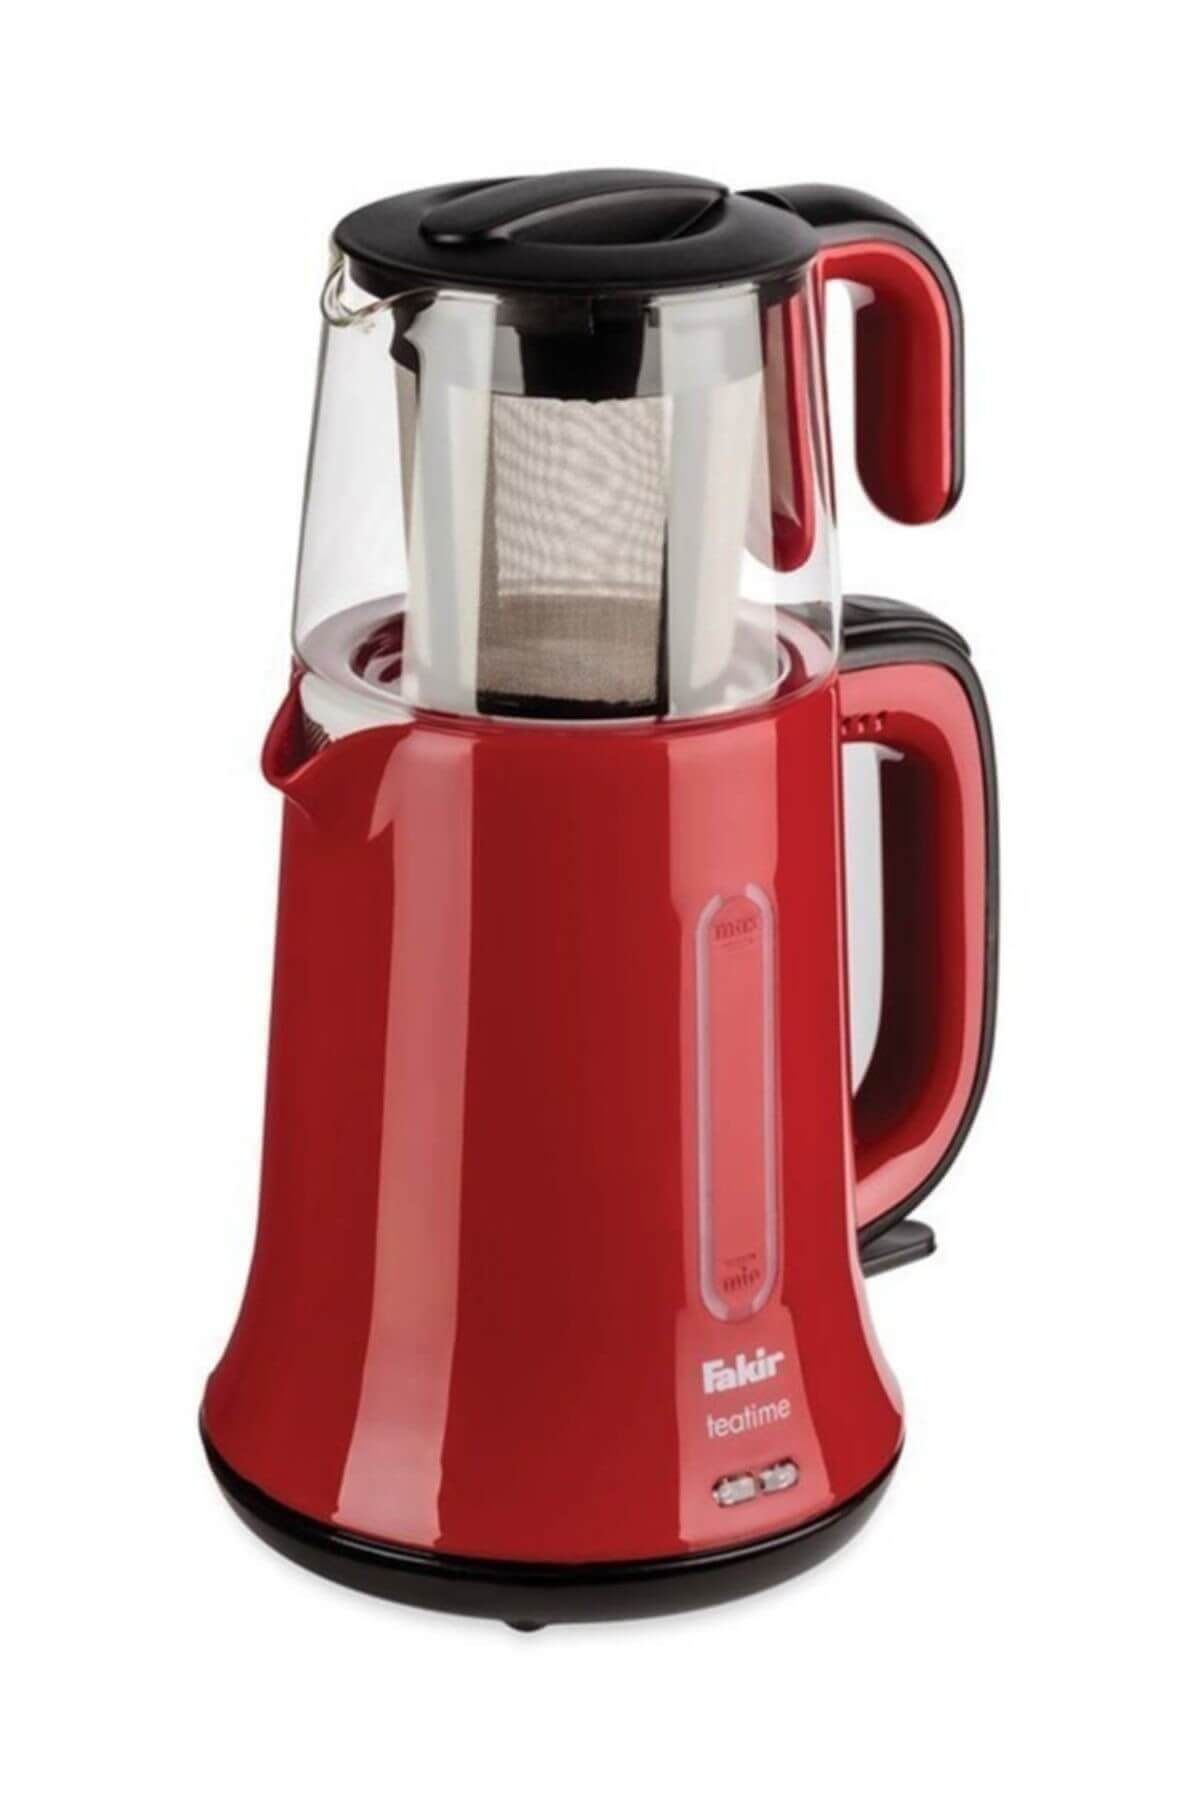 Fakir Teatime Kırmızı Siyah Çay Yapma Makinesi